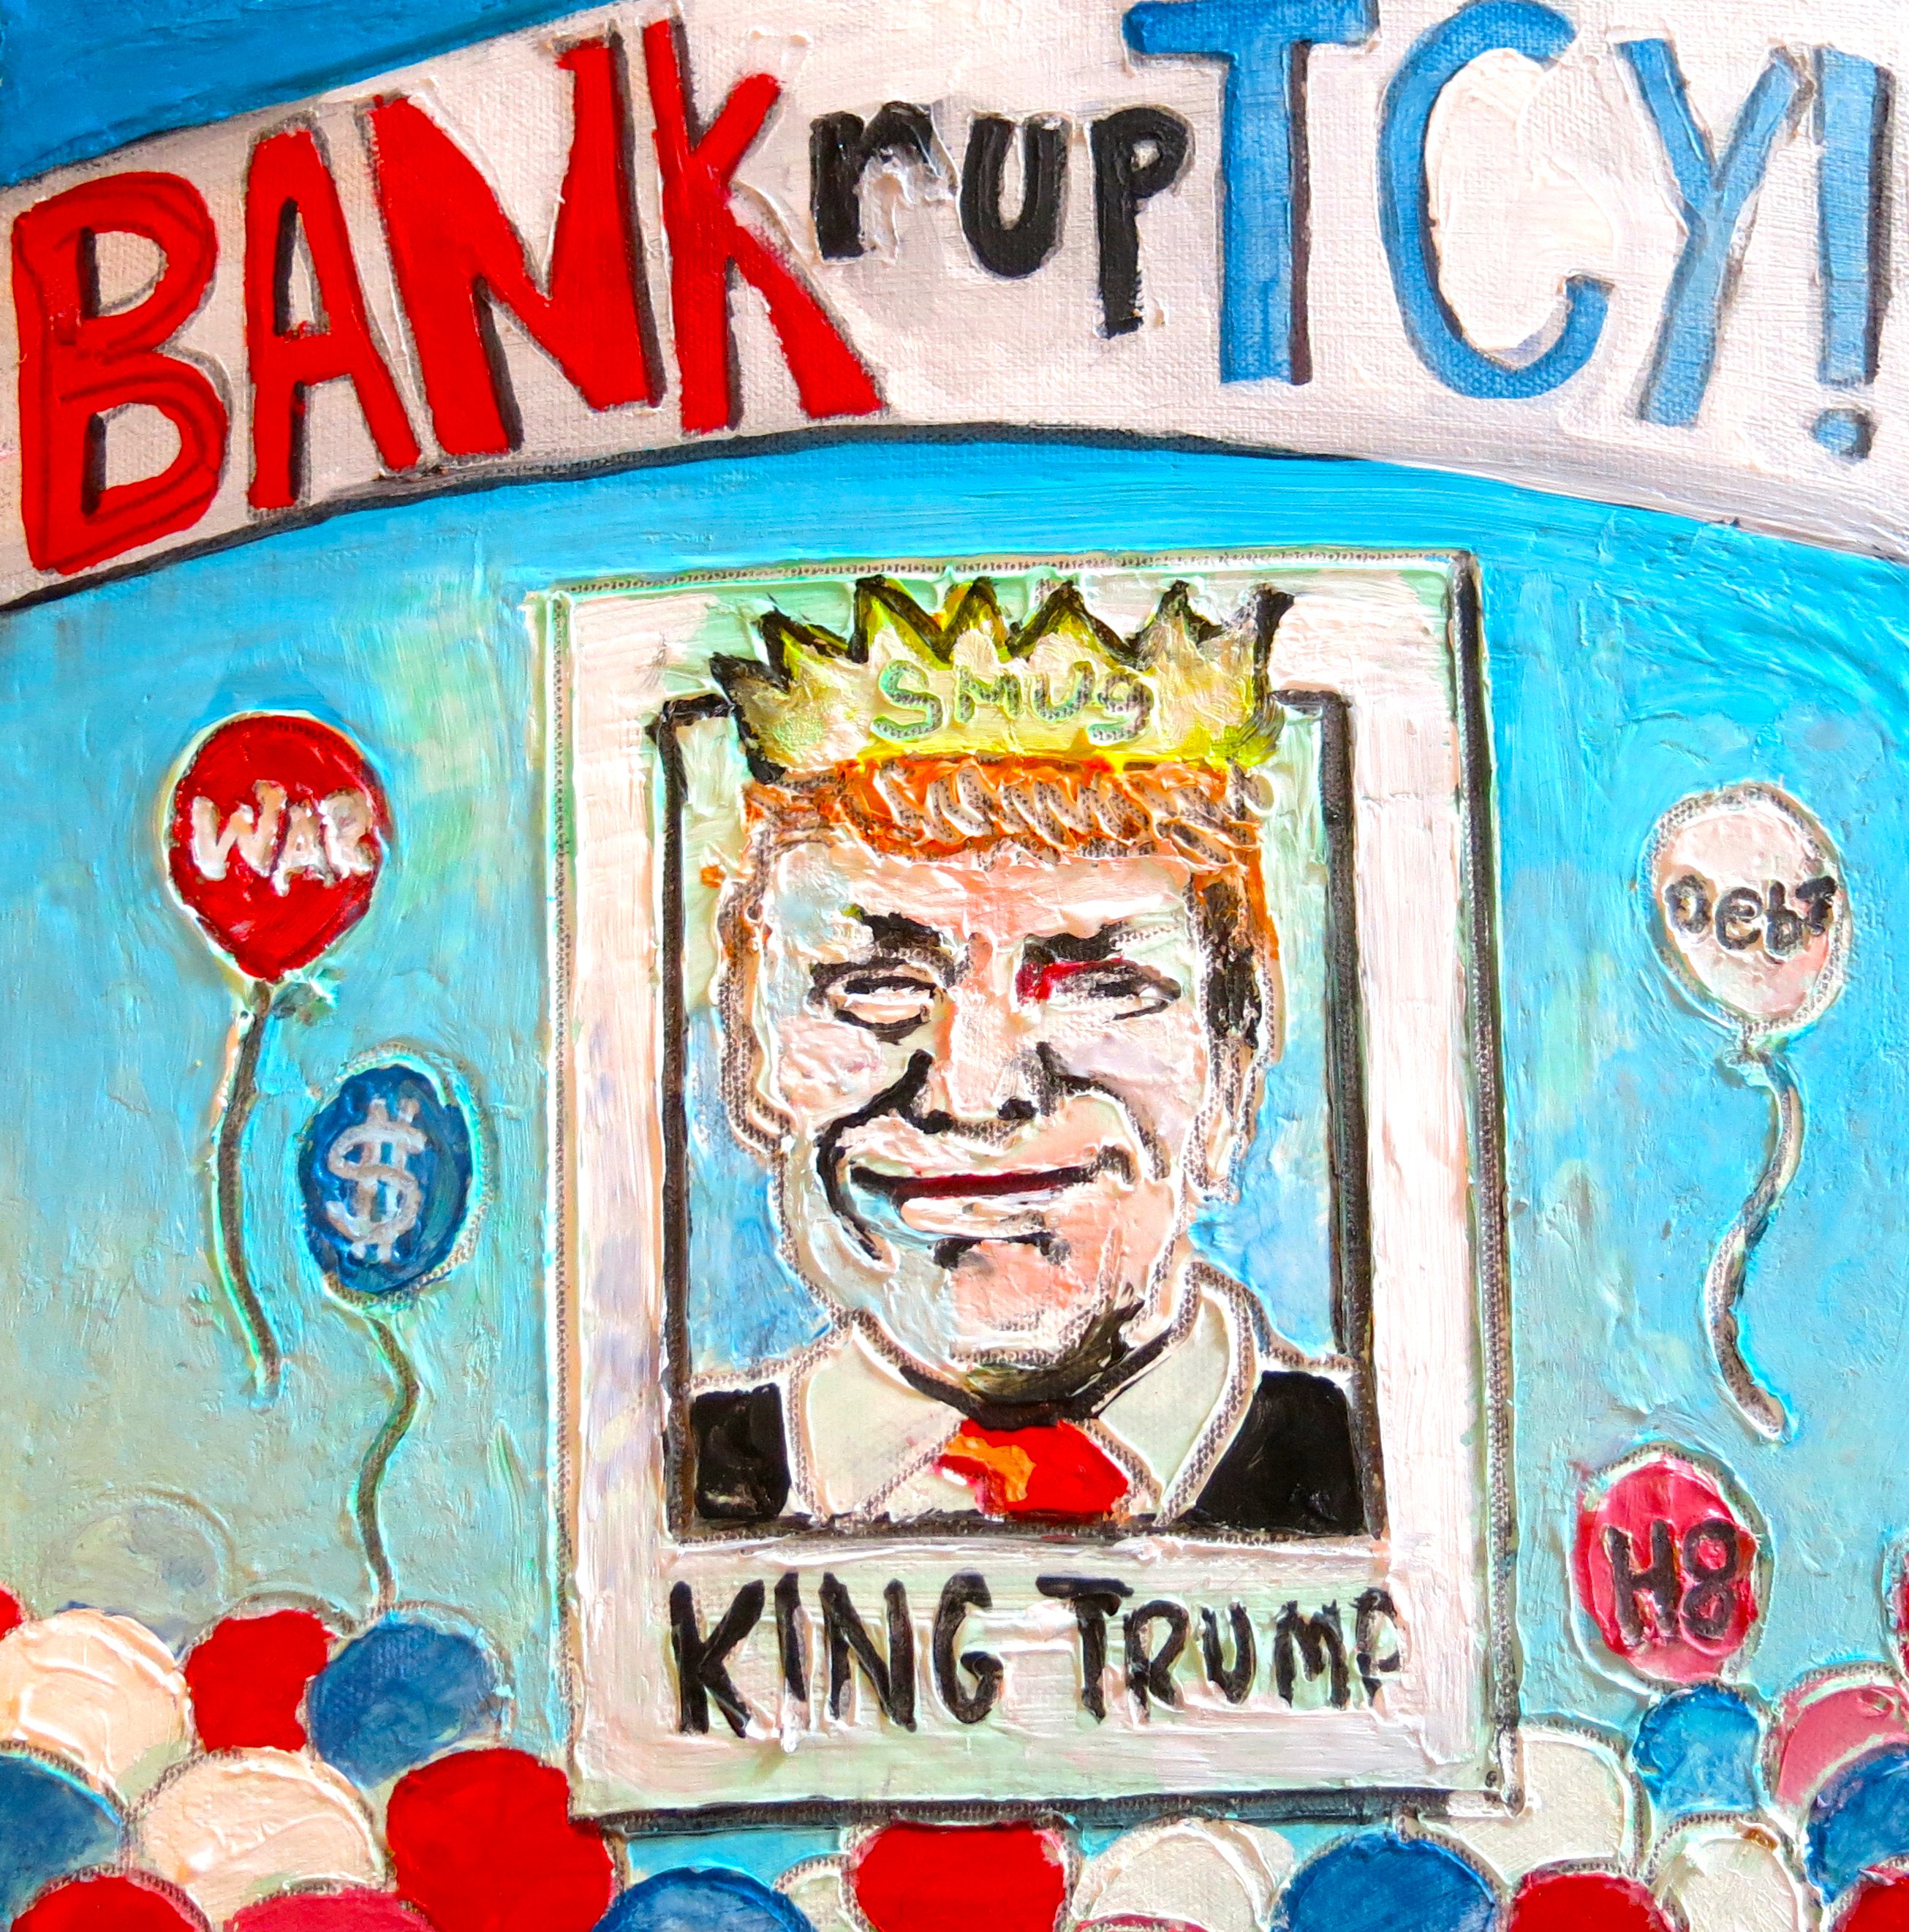 20201103 Eleccions presidencials EUA Trump pintada bankruptcy (Thorbakopper)